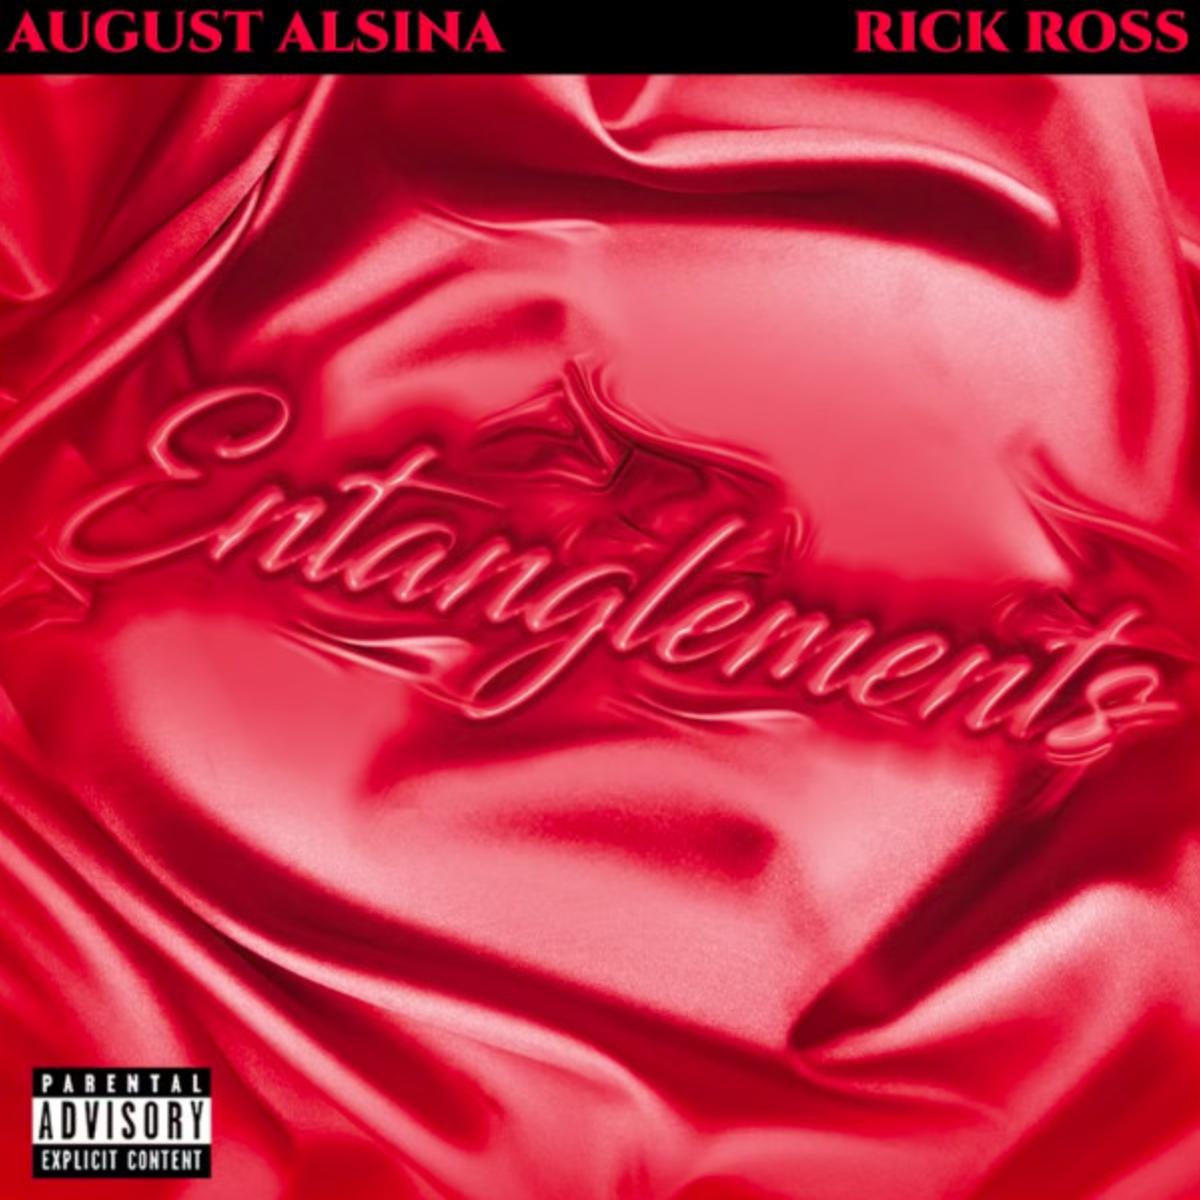 August Alsina & Rick Ross Unite For “Entanglements”